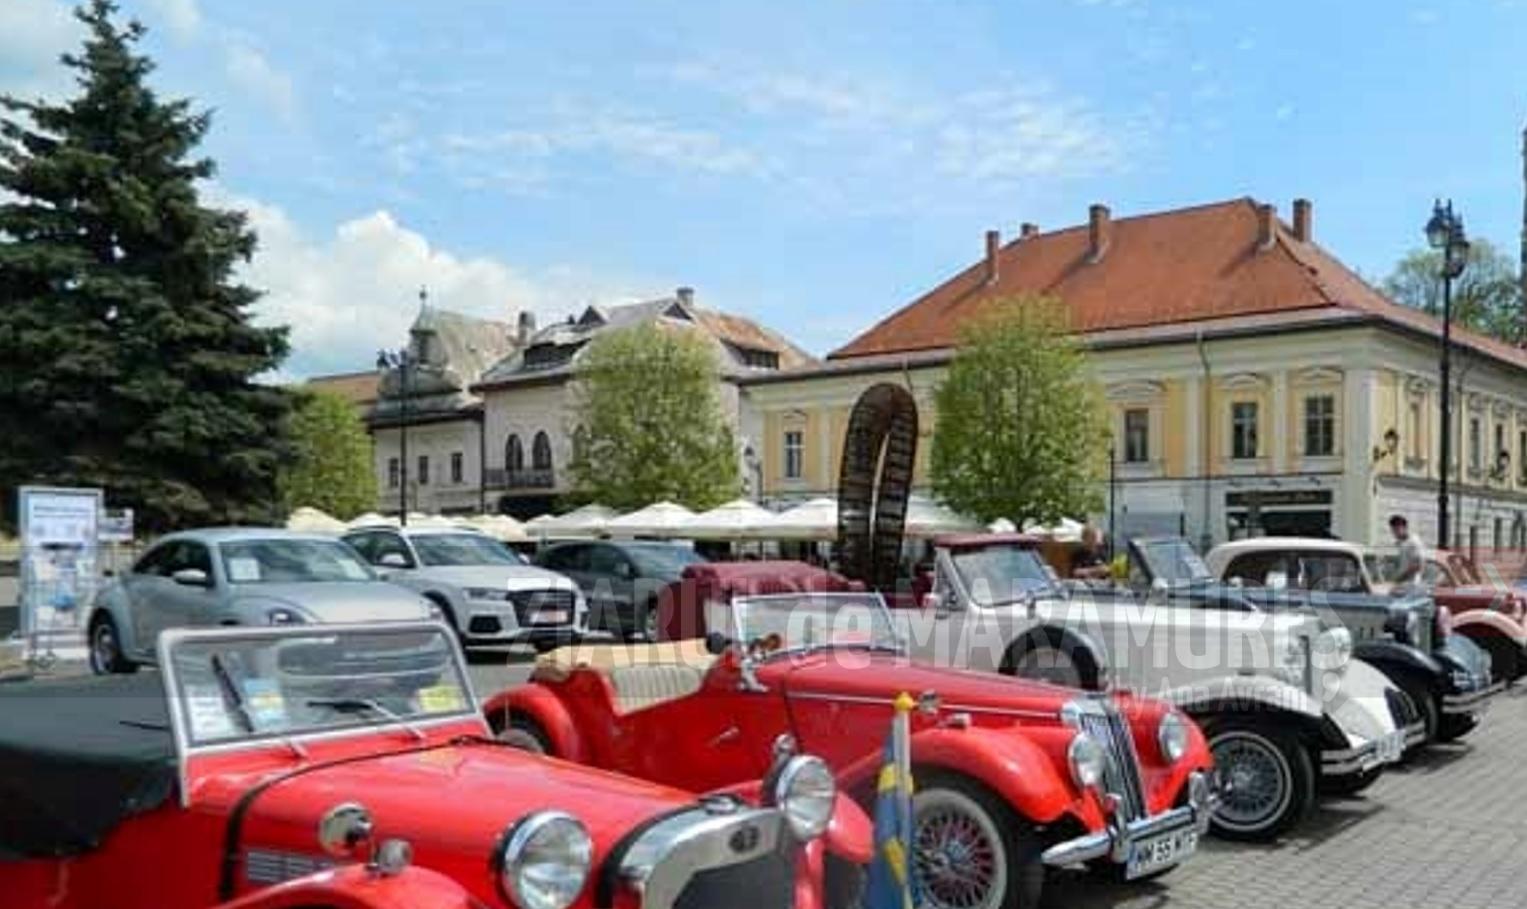 14 mai, expunerea mașinilor istorice în Piața Libertății din Baia Mare